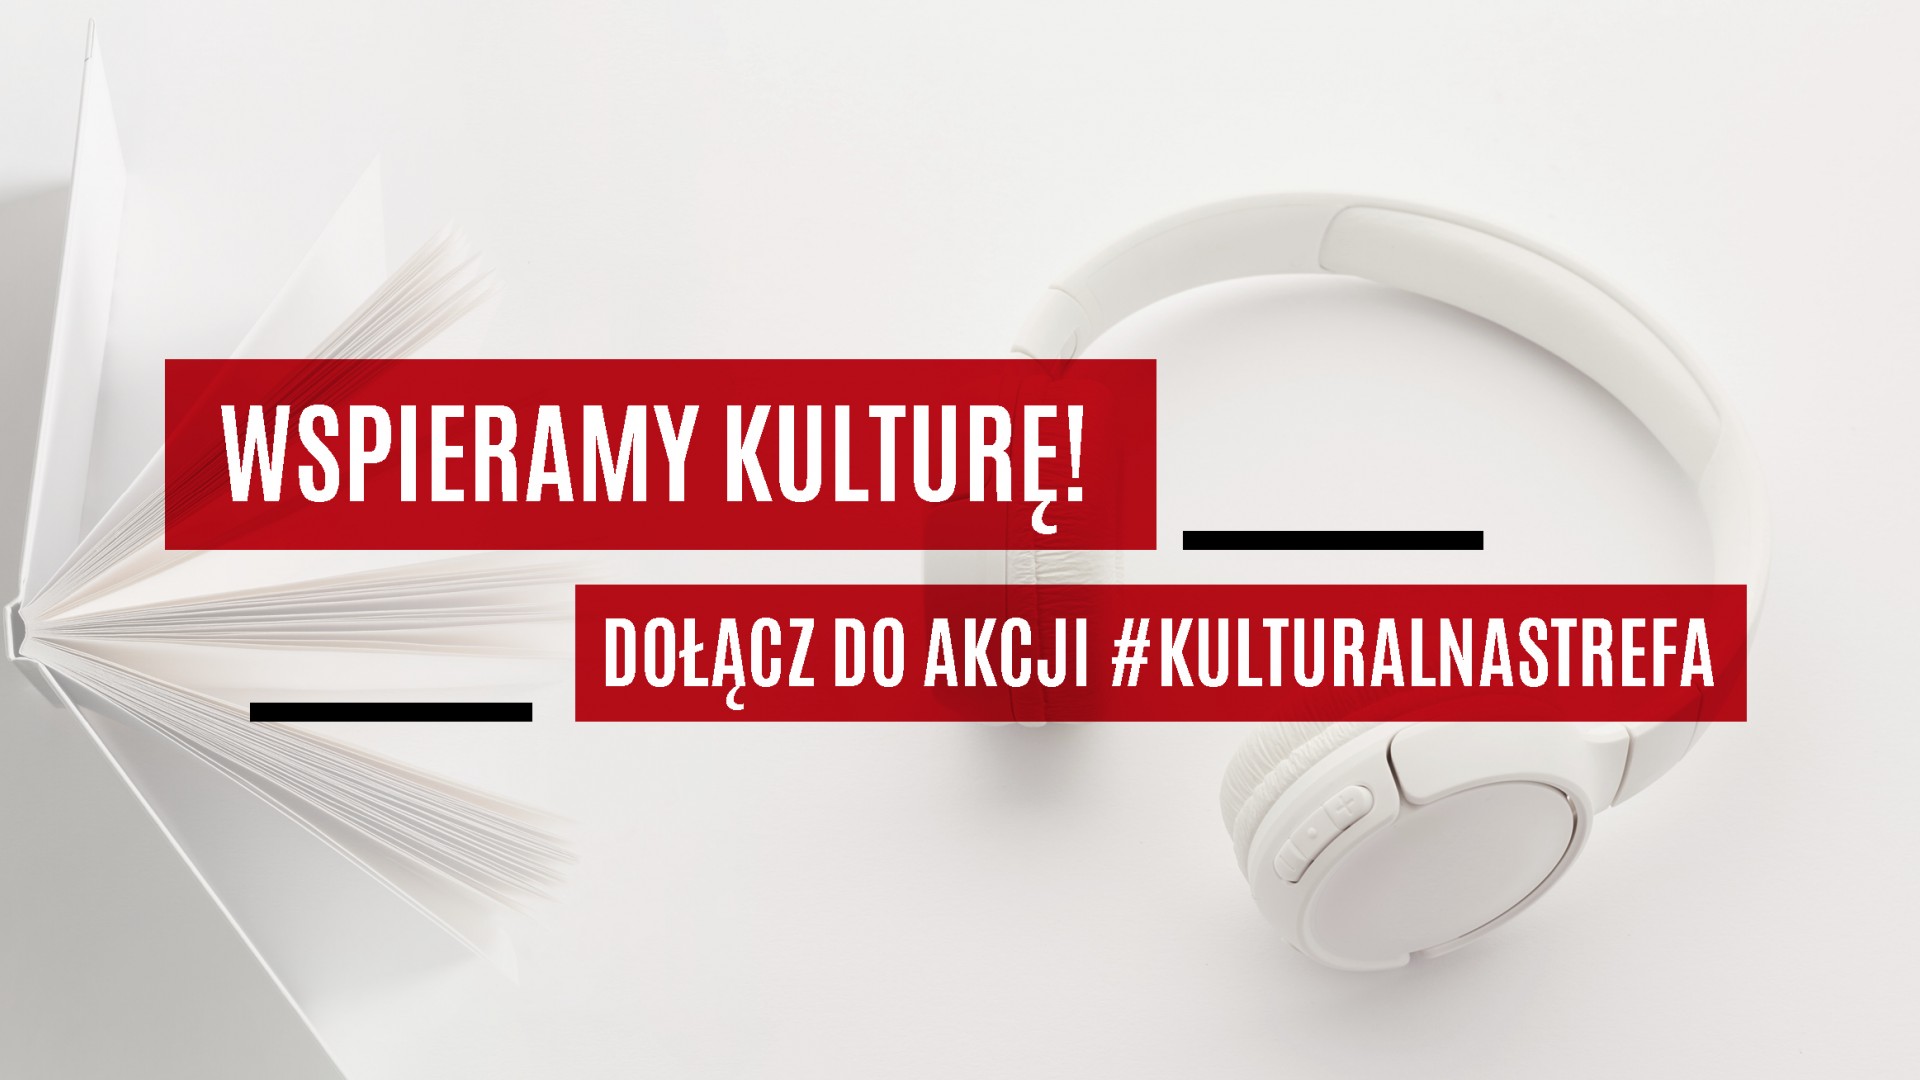 Wydawnictwo Agora z akcją #Kulturalnastrefa wspierającą działalność polskich artystów